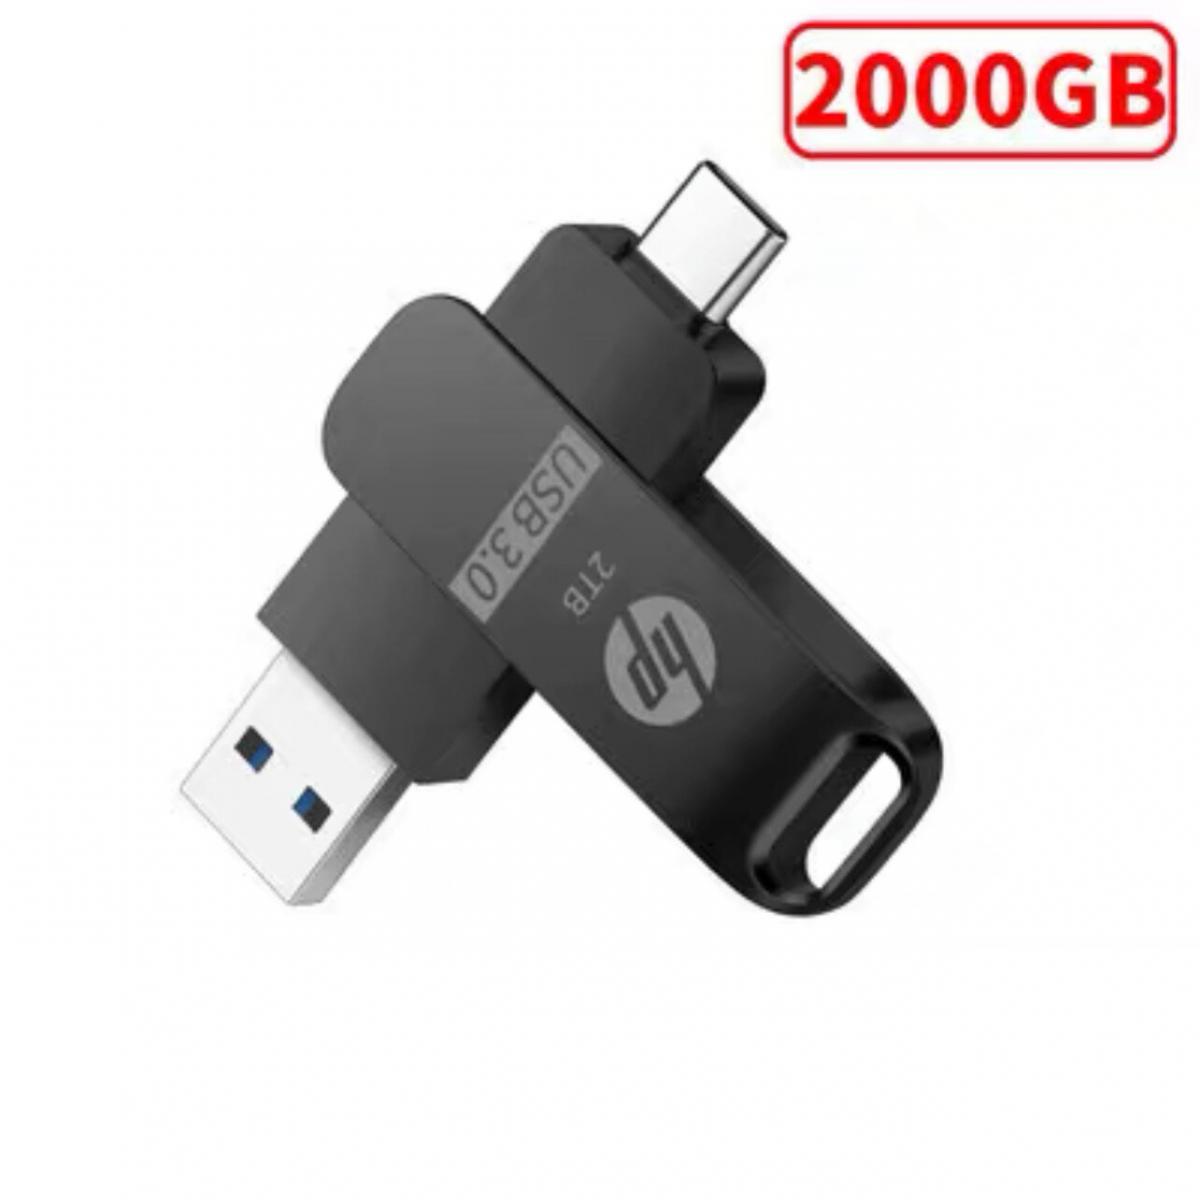 全城熱賣| 《HP》-2TB Tpye-C and USB3.0-Black(Parallel Import